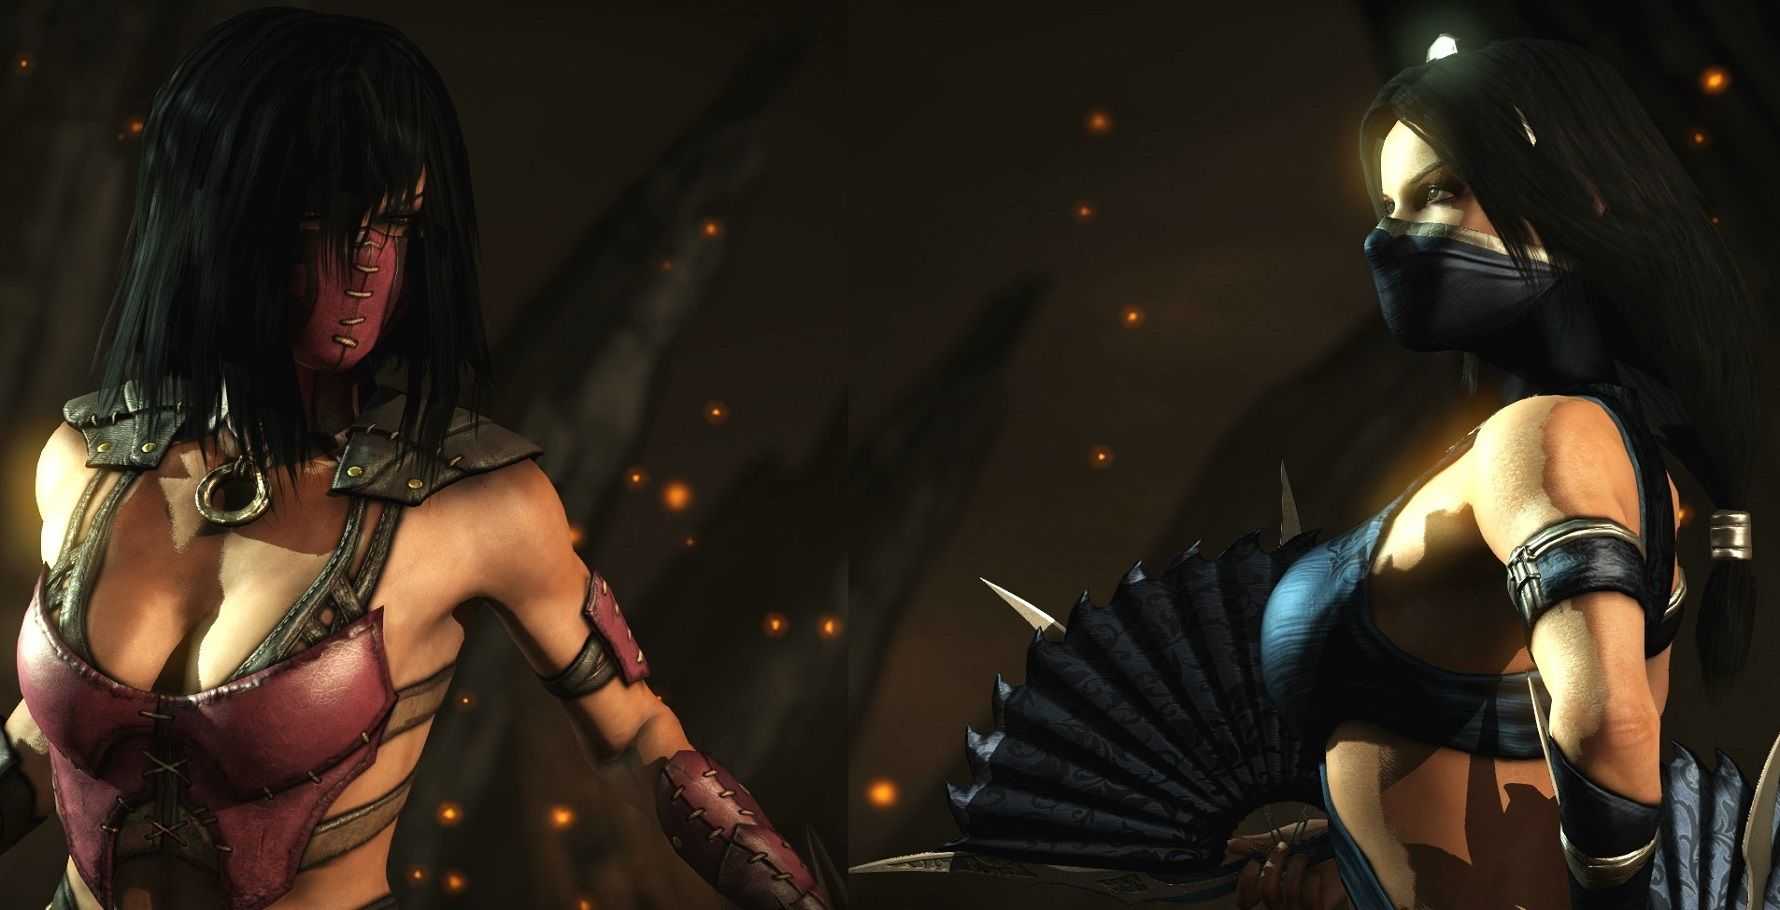 Милина — один из наиболее популярных персонажей в серии Mortal Kombat, чей образ послужил источником вдохновения для многих косплееров